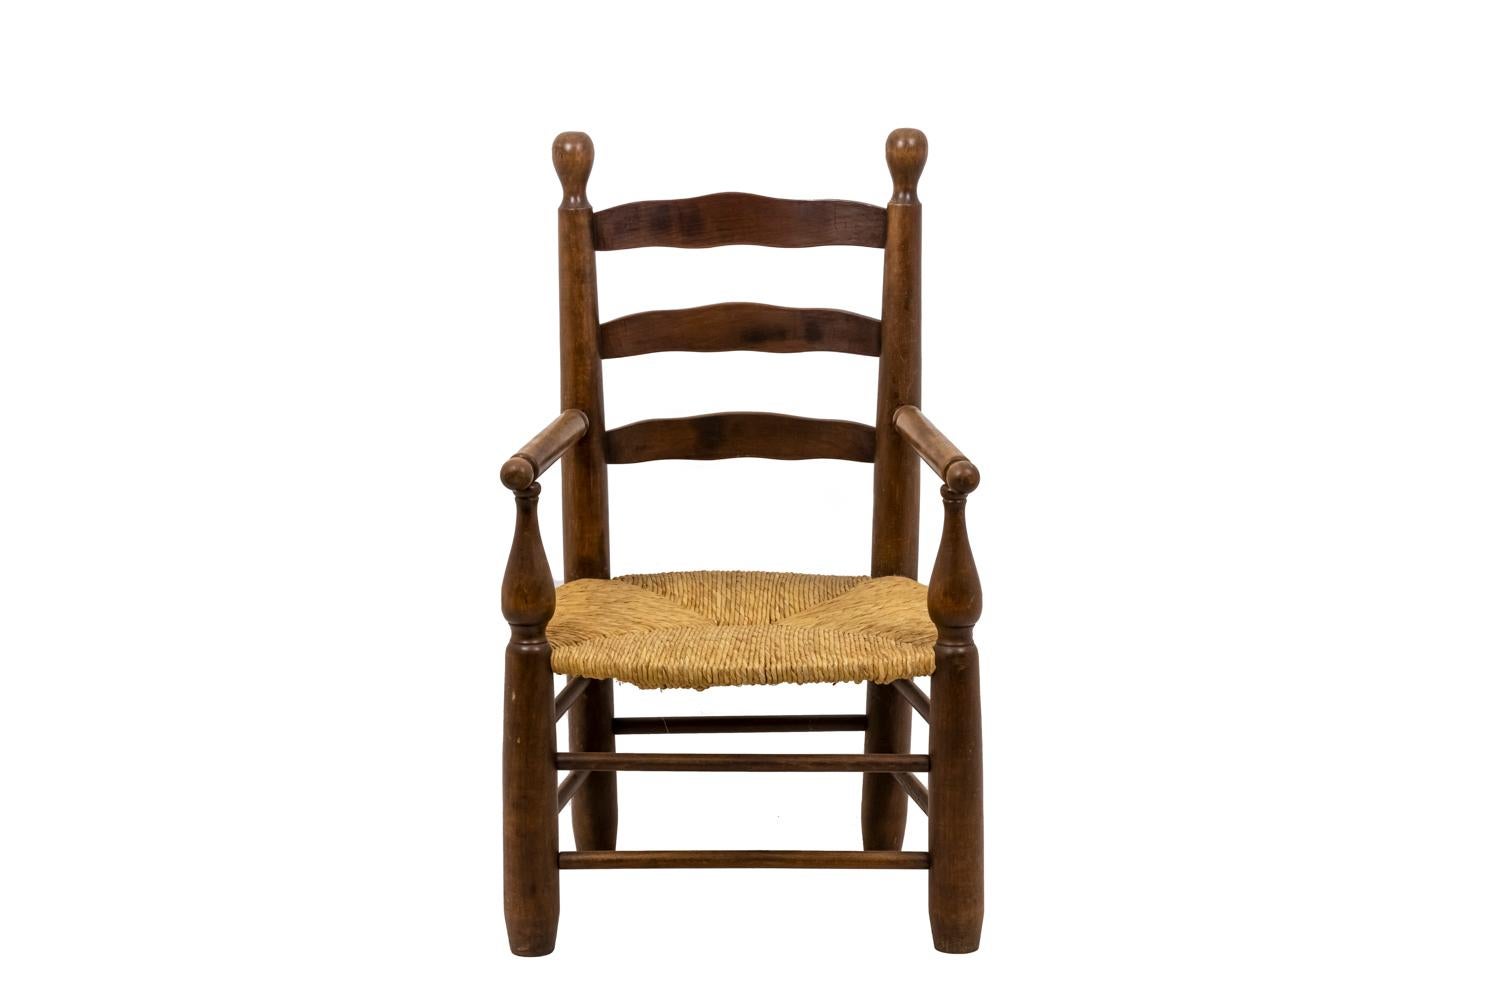 Charles Dudouyt, im Stil von.

Ein Paar Sessel auf vier Holzbeinen, die durch zwei Querstreben miteinander verbunden sind. Struktur in Holz mit Sitz garniert von starw. Geformte Rücken- und Armlehnen. 

Das Werk wurde in den 1950er Jahren